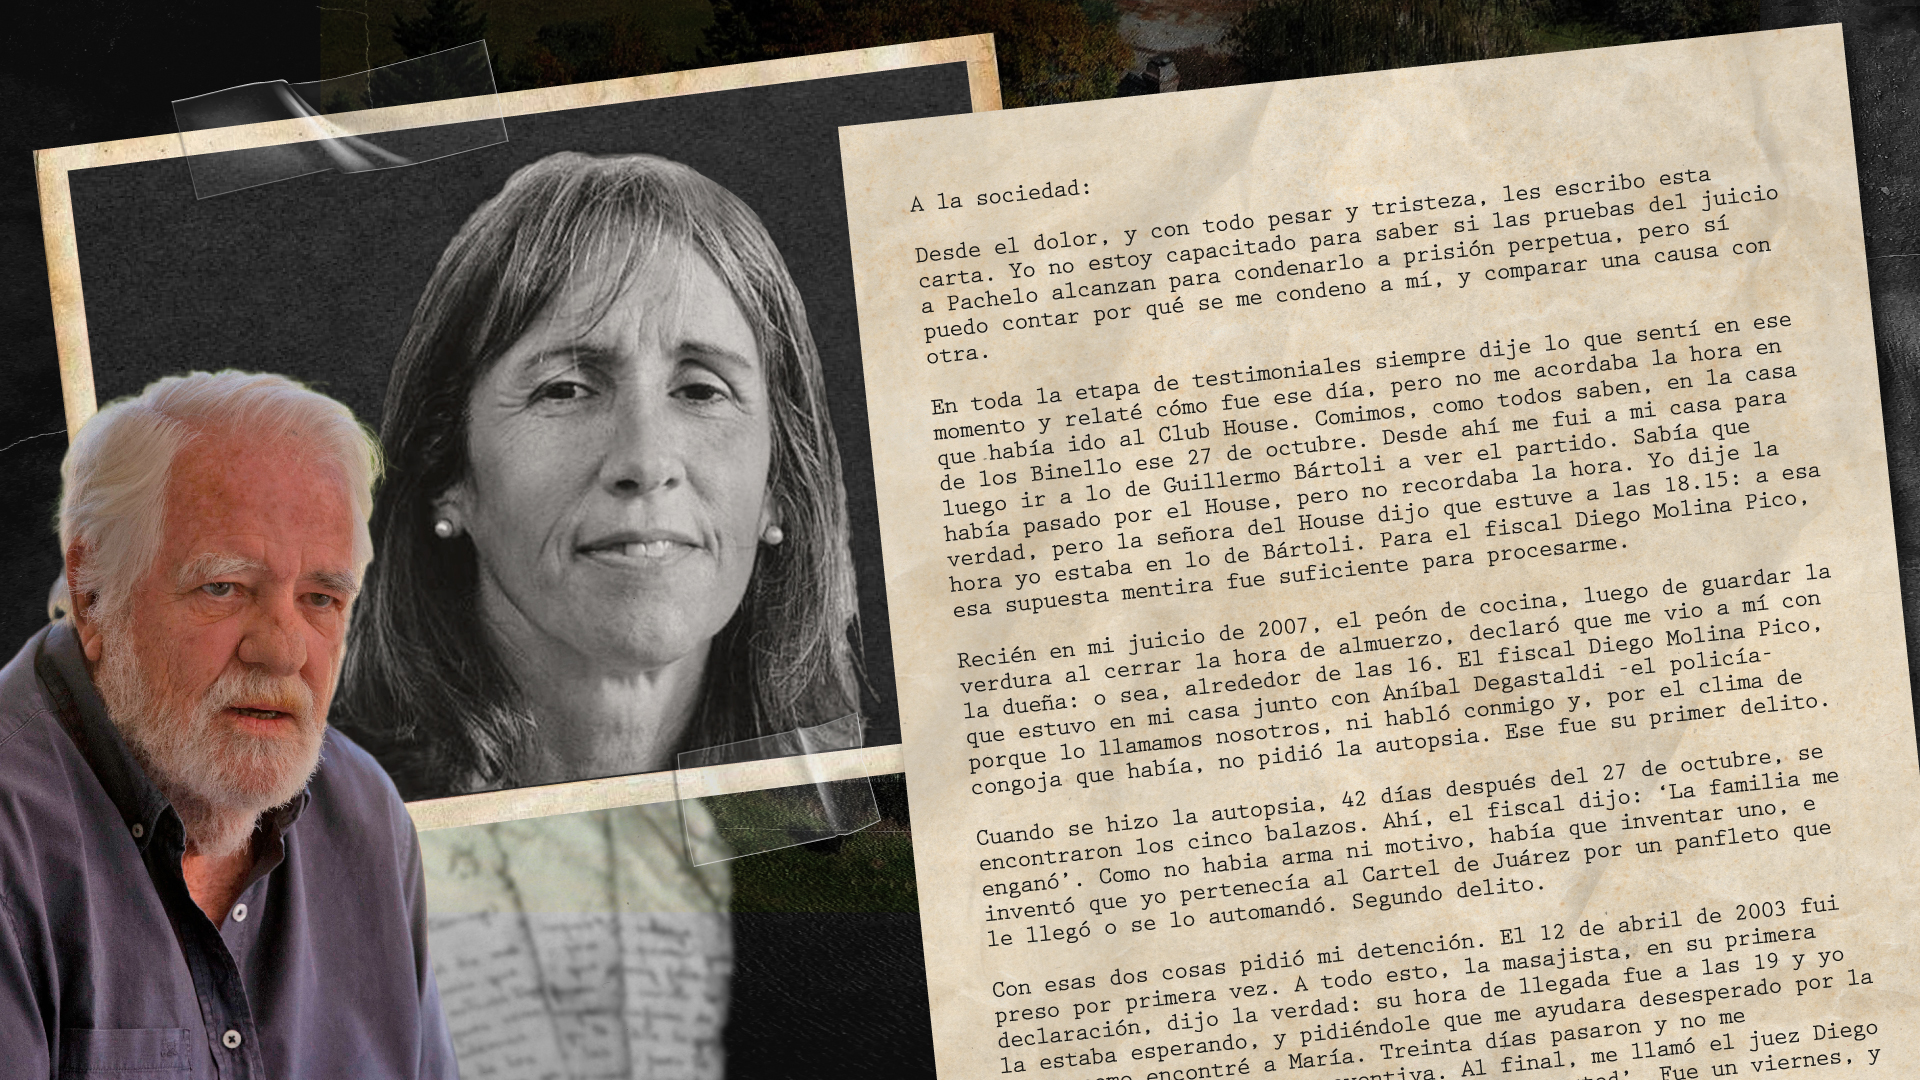 “La muerte de mi mujer no va a quedar impune”, la carta de Carlos Carrascosa tras la absolución de Nicolás Pachelo